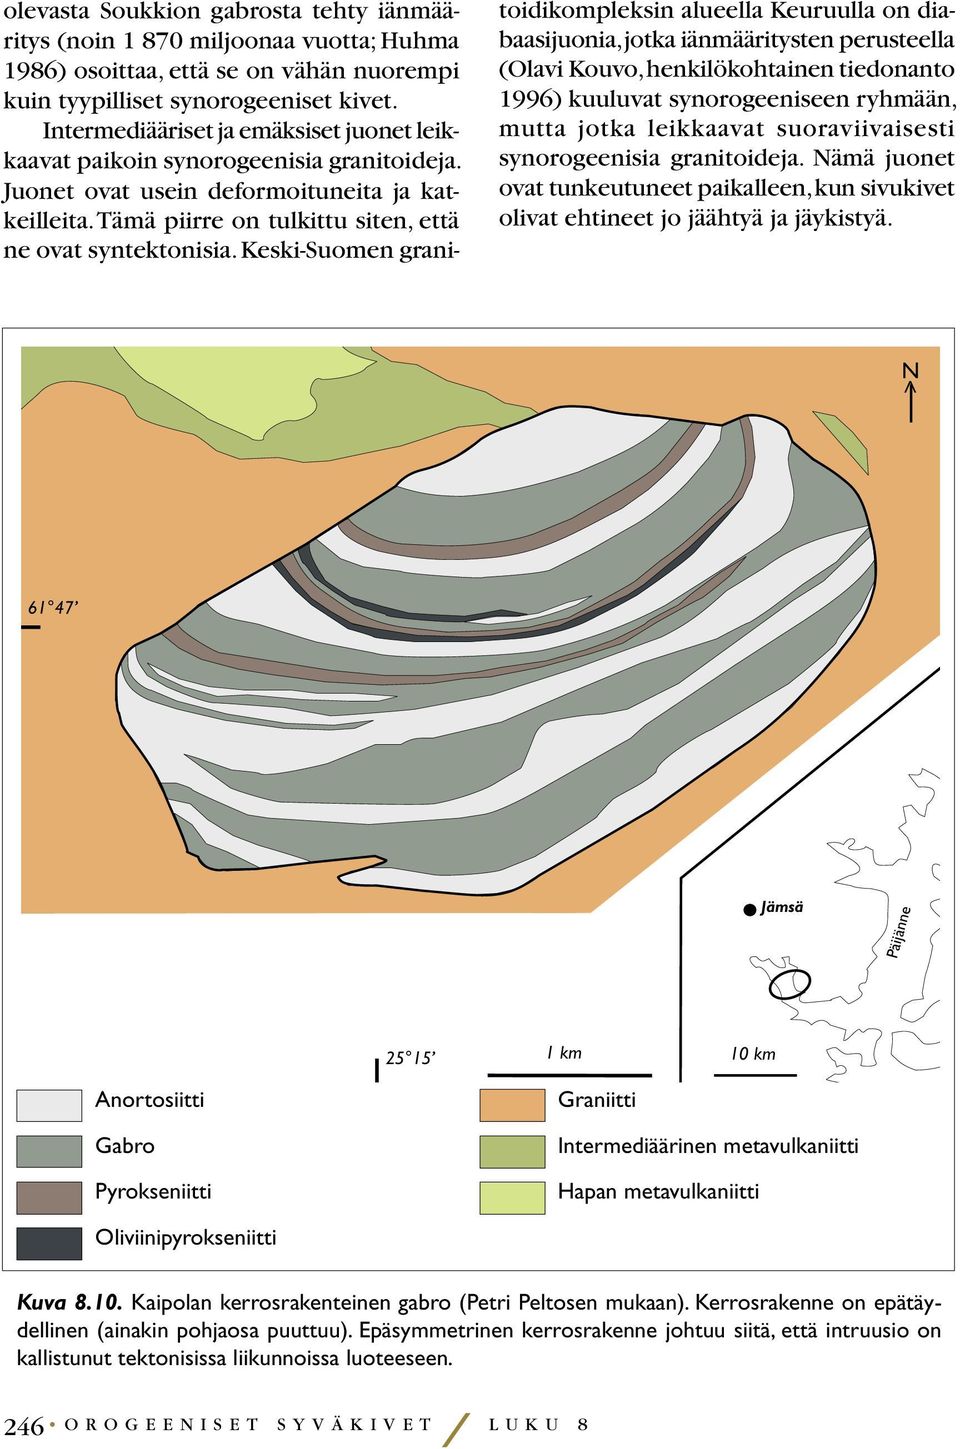 Keski-Suomen granitoidikompleksin alueella Keuruulla on diabaasijuonia, jotka iänmääritysten perusteella (Olavi Kouvo, henkilökohtainen tiedonanto 1996) kuuluvat synorogeeniseen ryhmään, mutta jotka